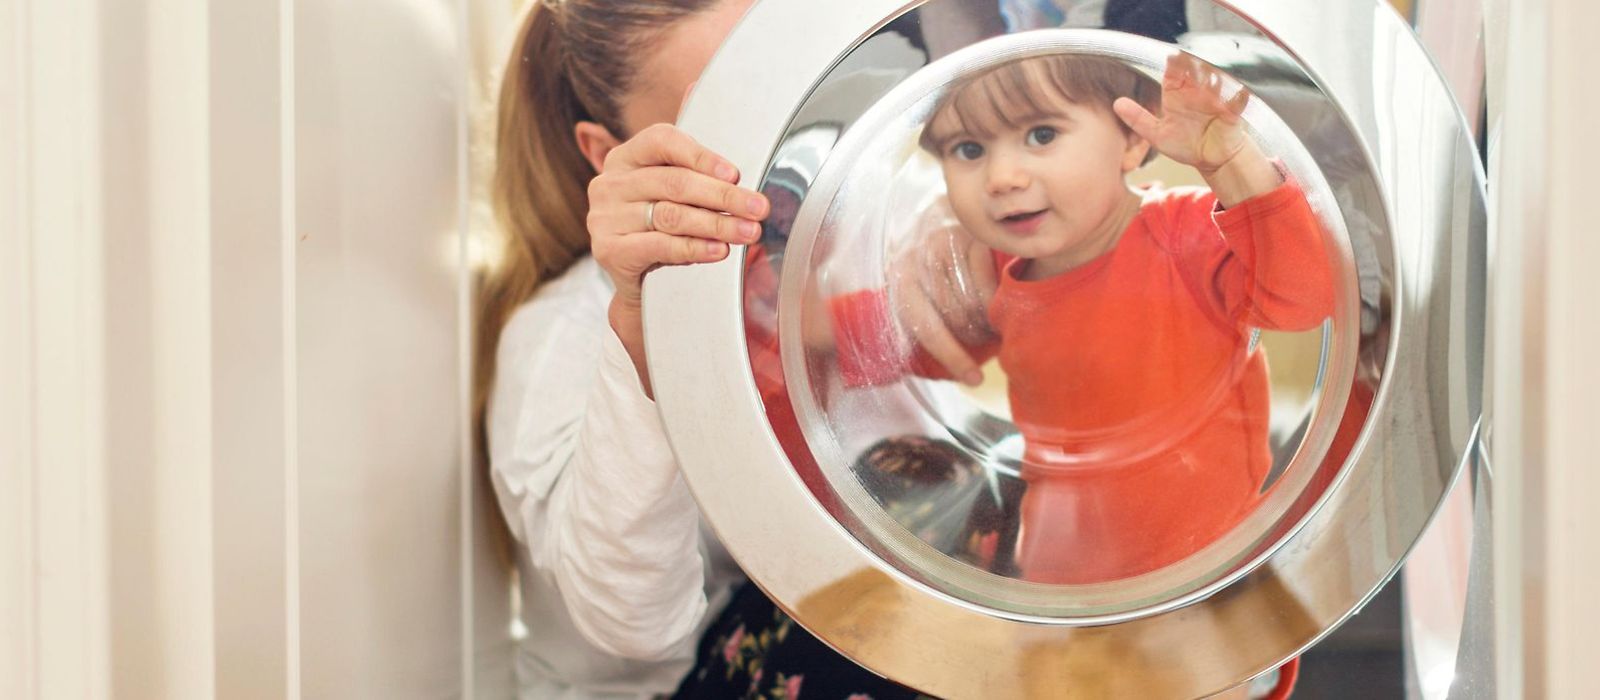 Frau mit Kind vor einer Waschmaschine